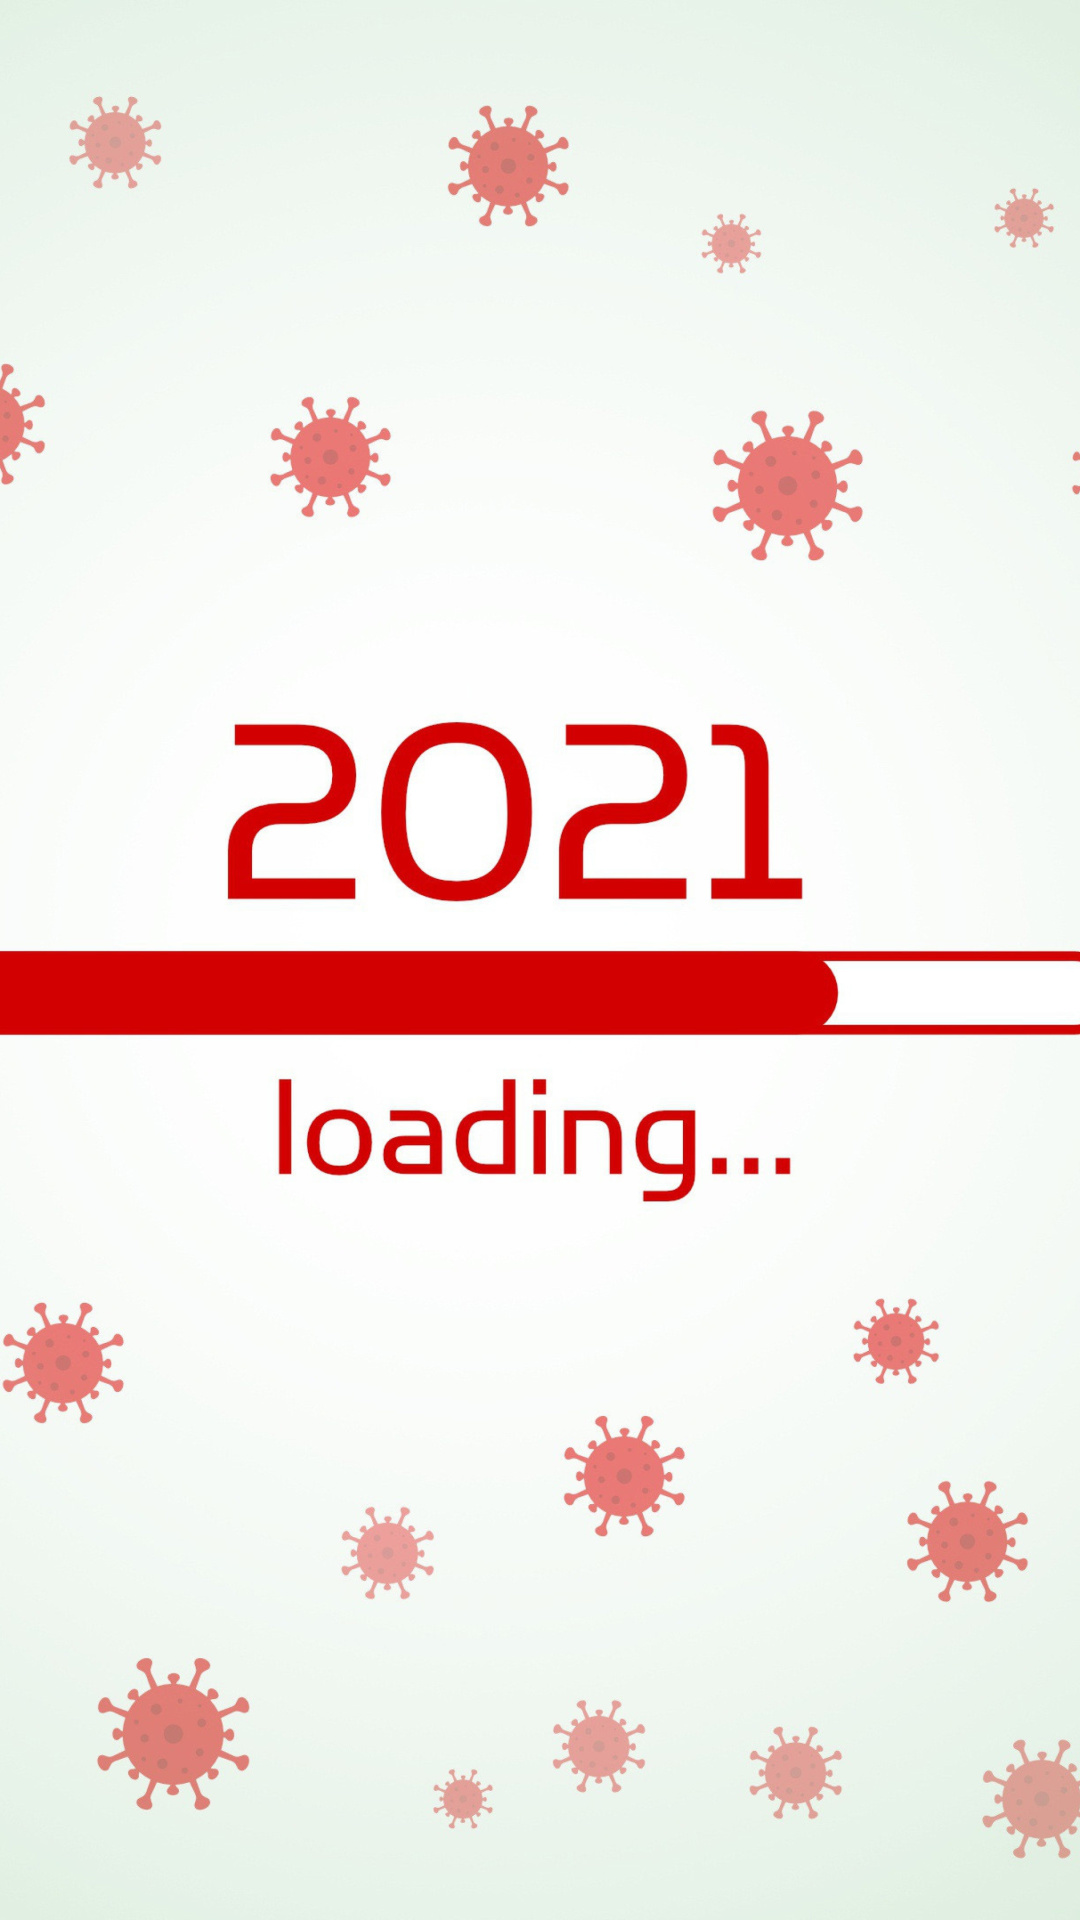 Sfondi 2021 New Year Loading 1080x1920